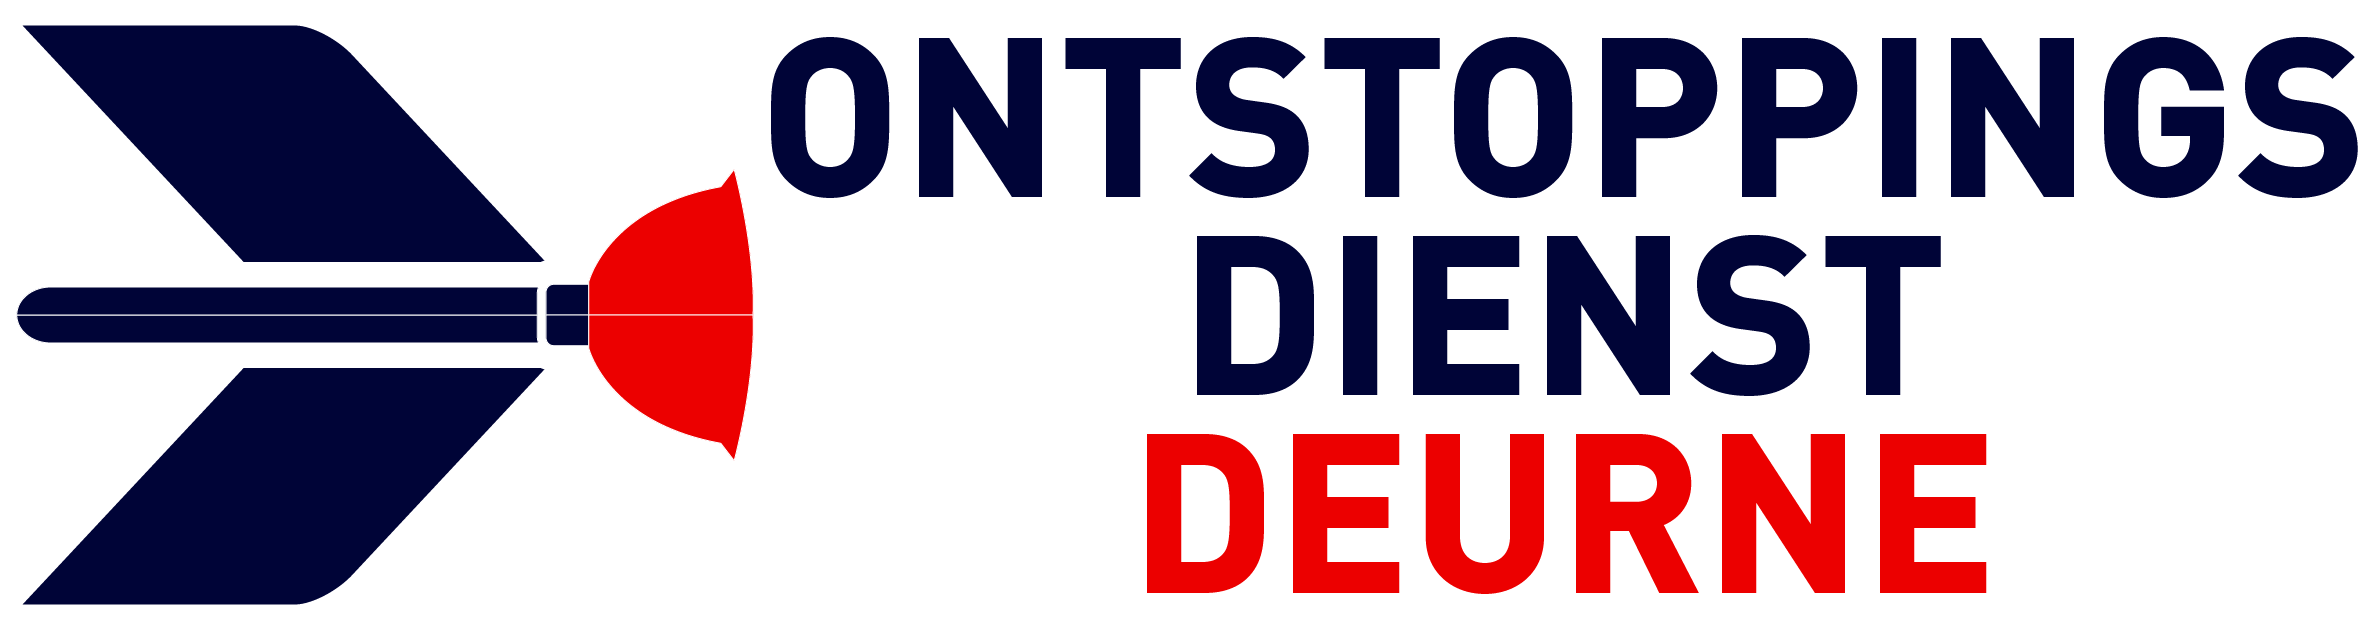 Ontstoppingsdienst Deurne logo